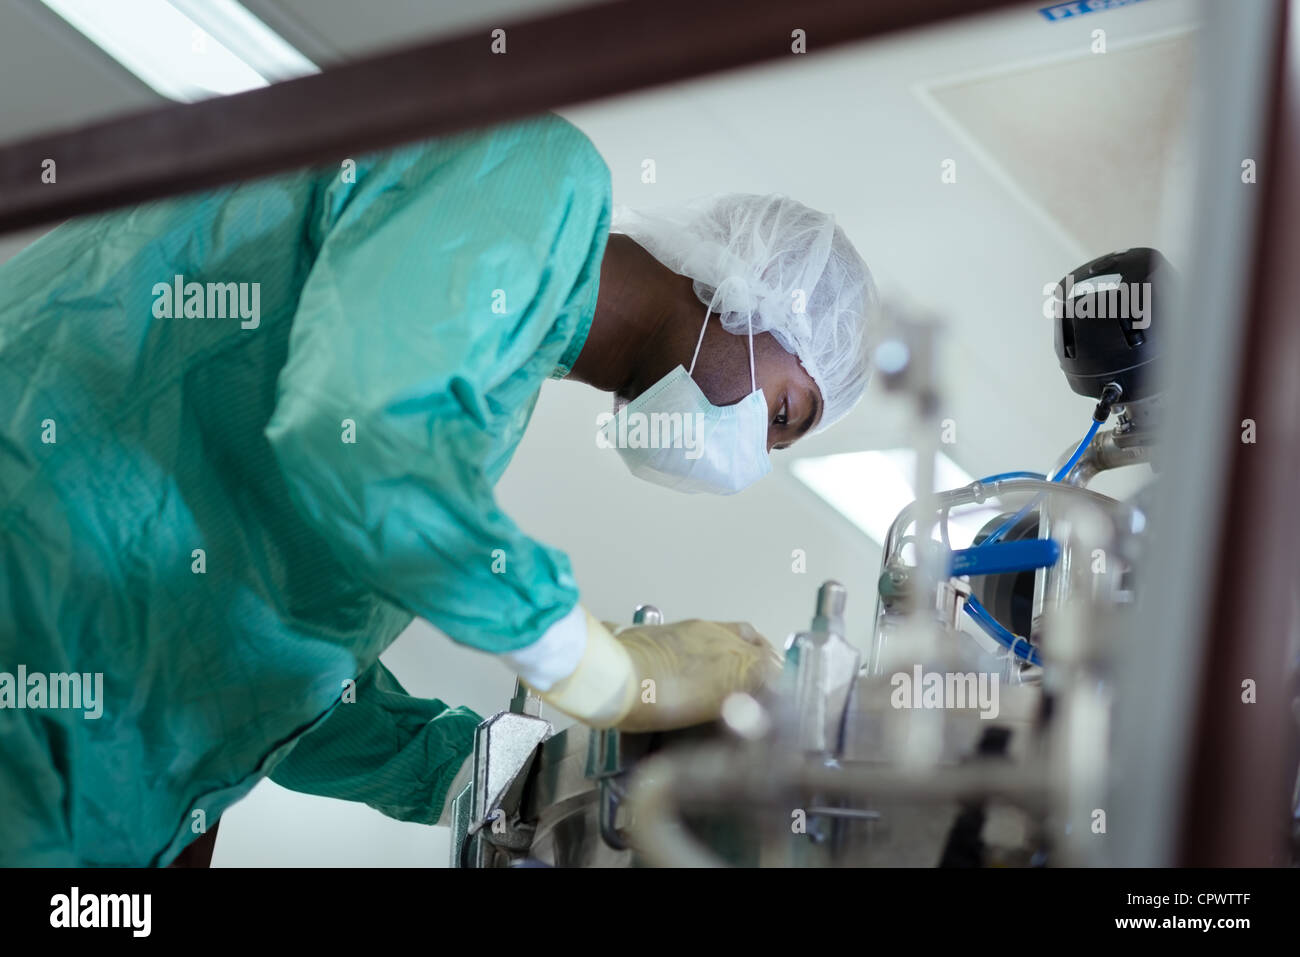 Tecnico di laboratorio a lavorare come ricercatore nel settore biotech con apparecchiature di precisione Foto Stock